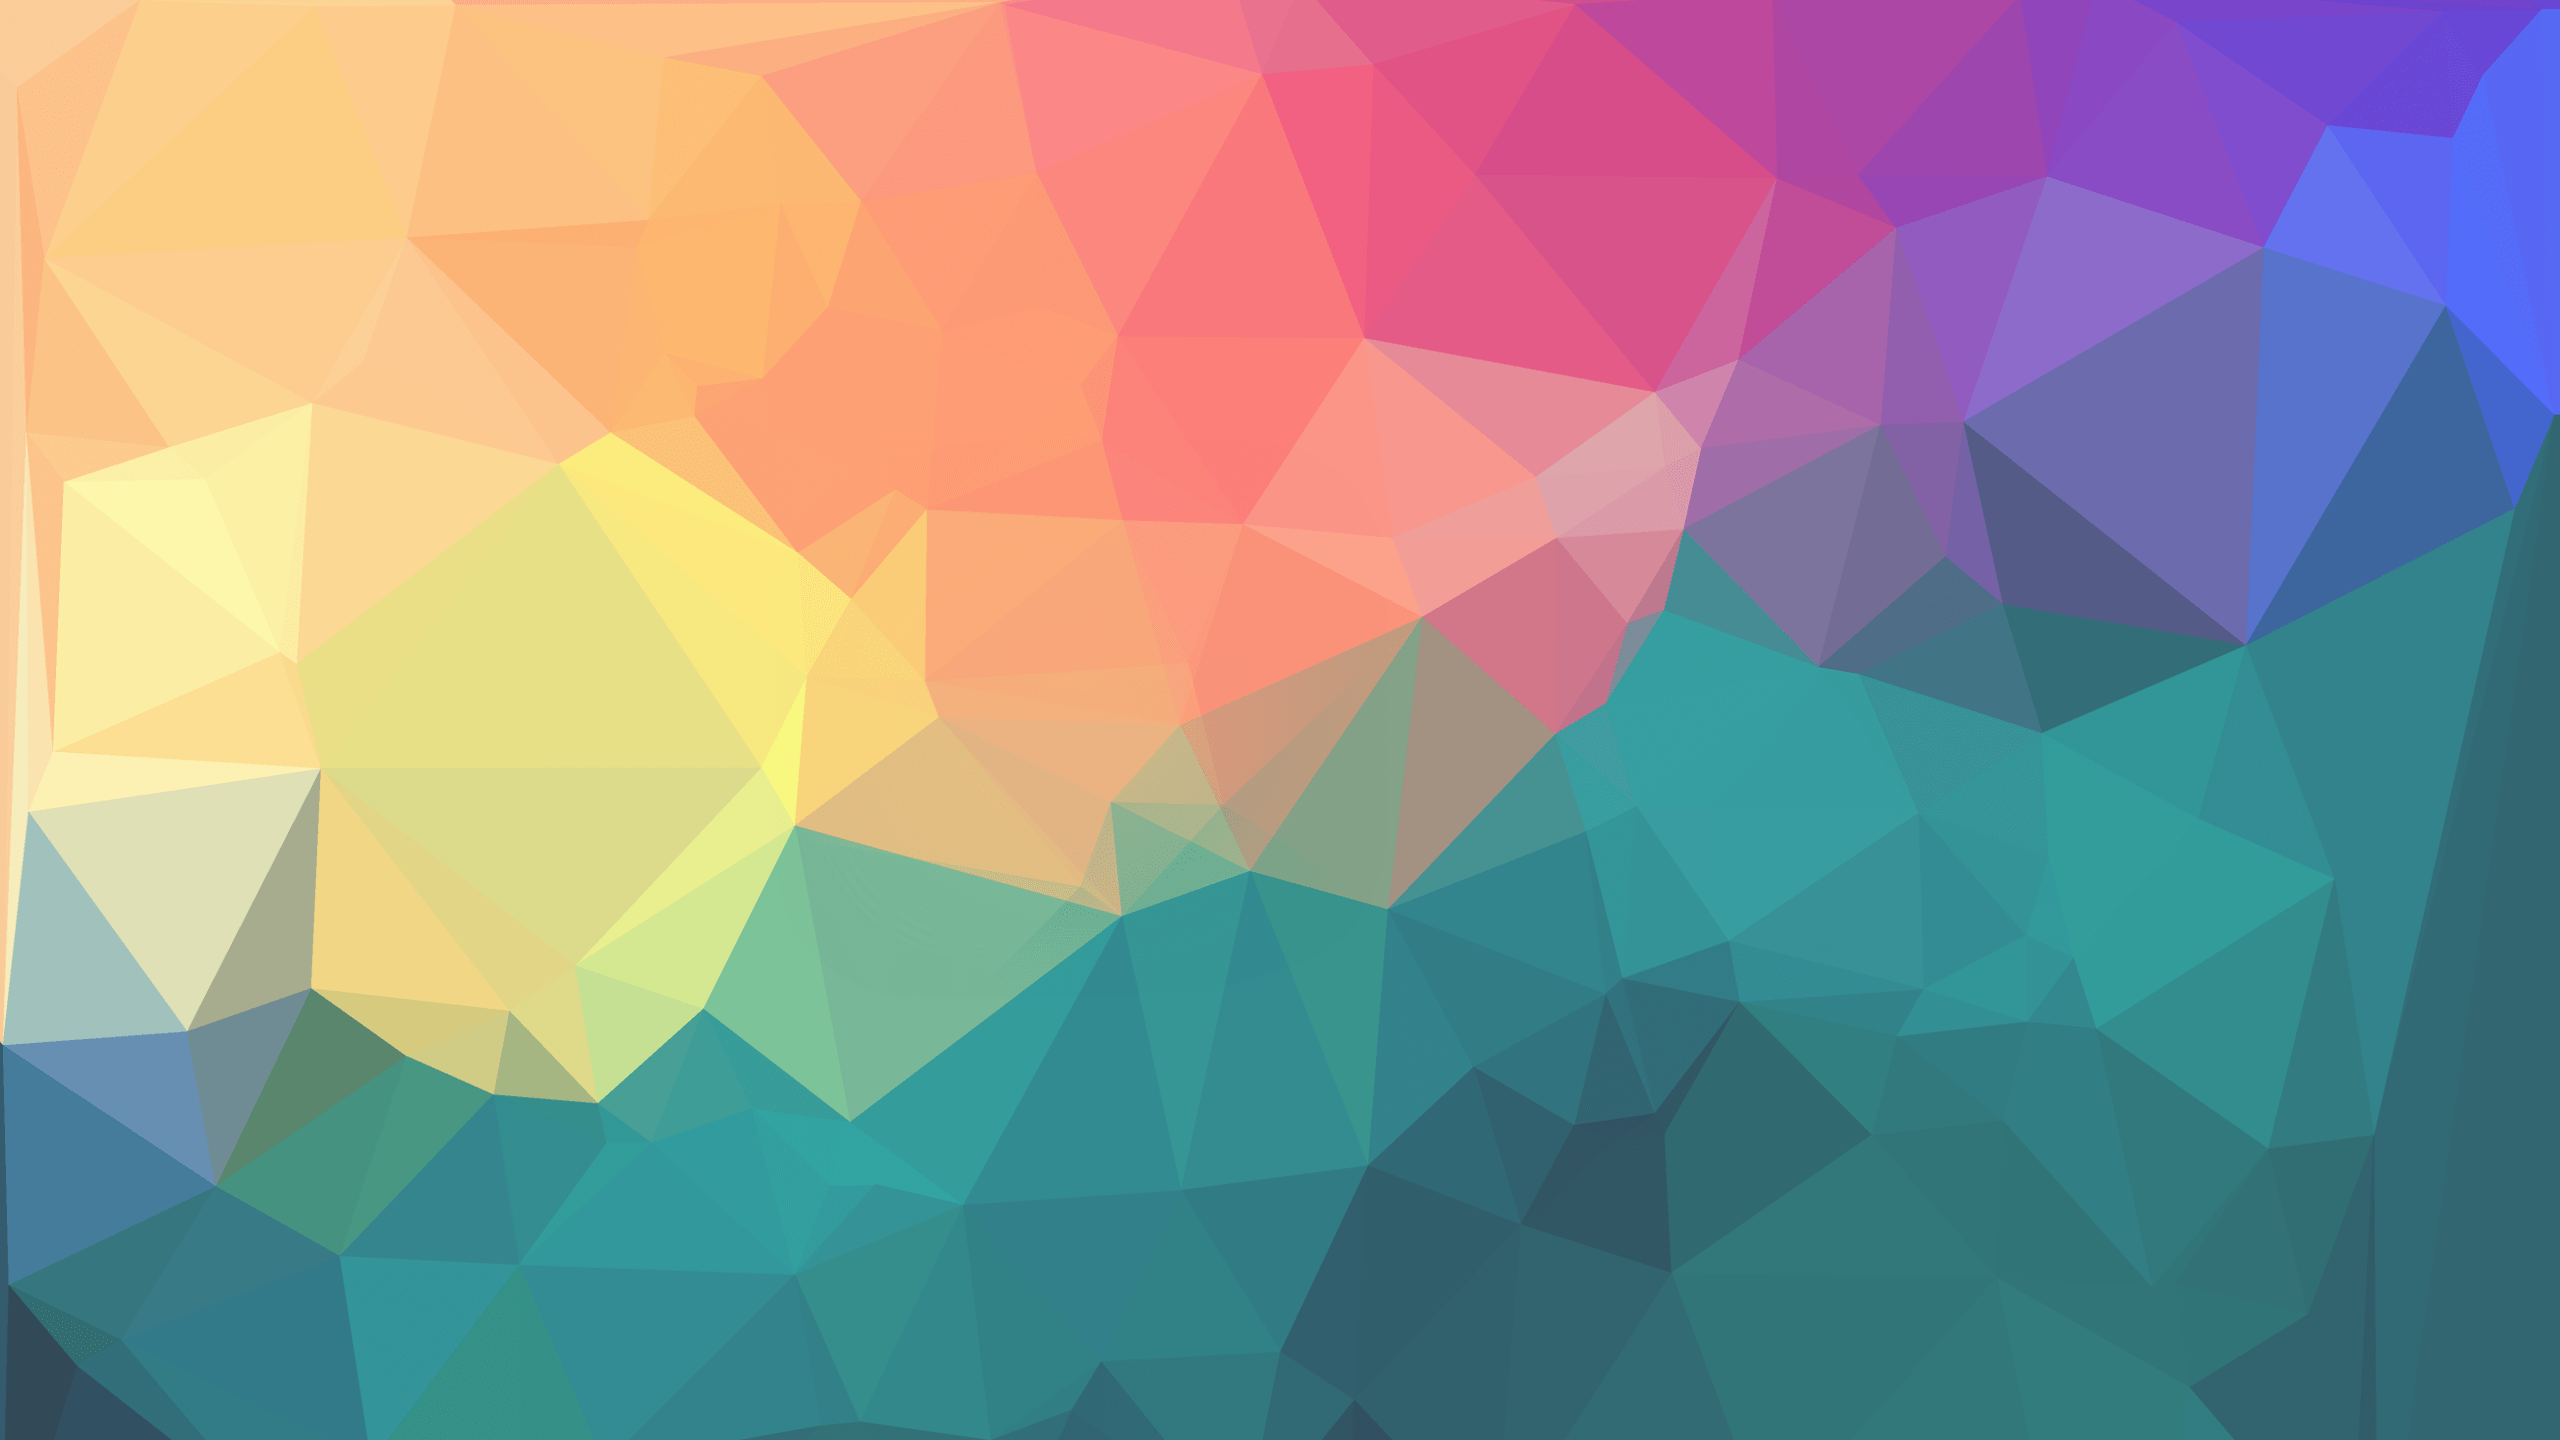 Geometric Pattern Desktop Wallpaper